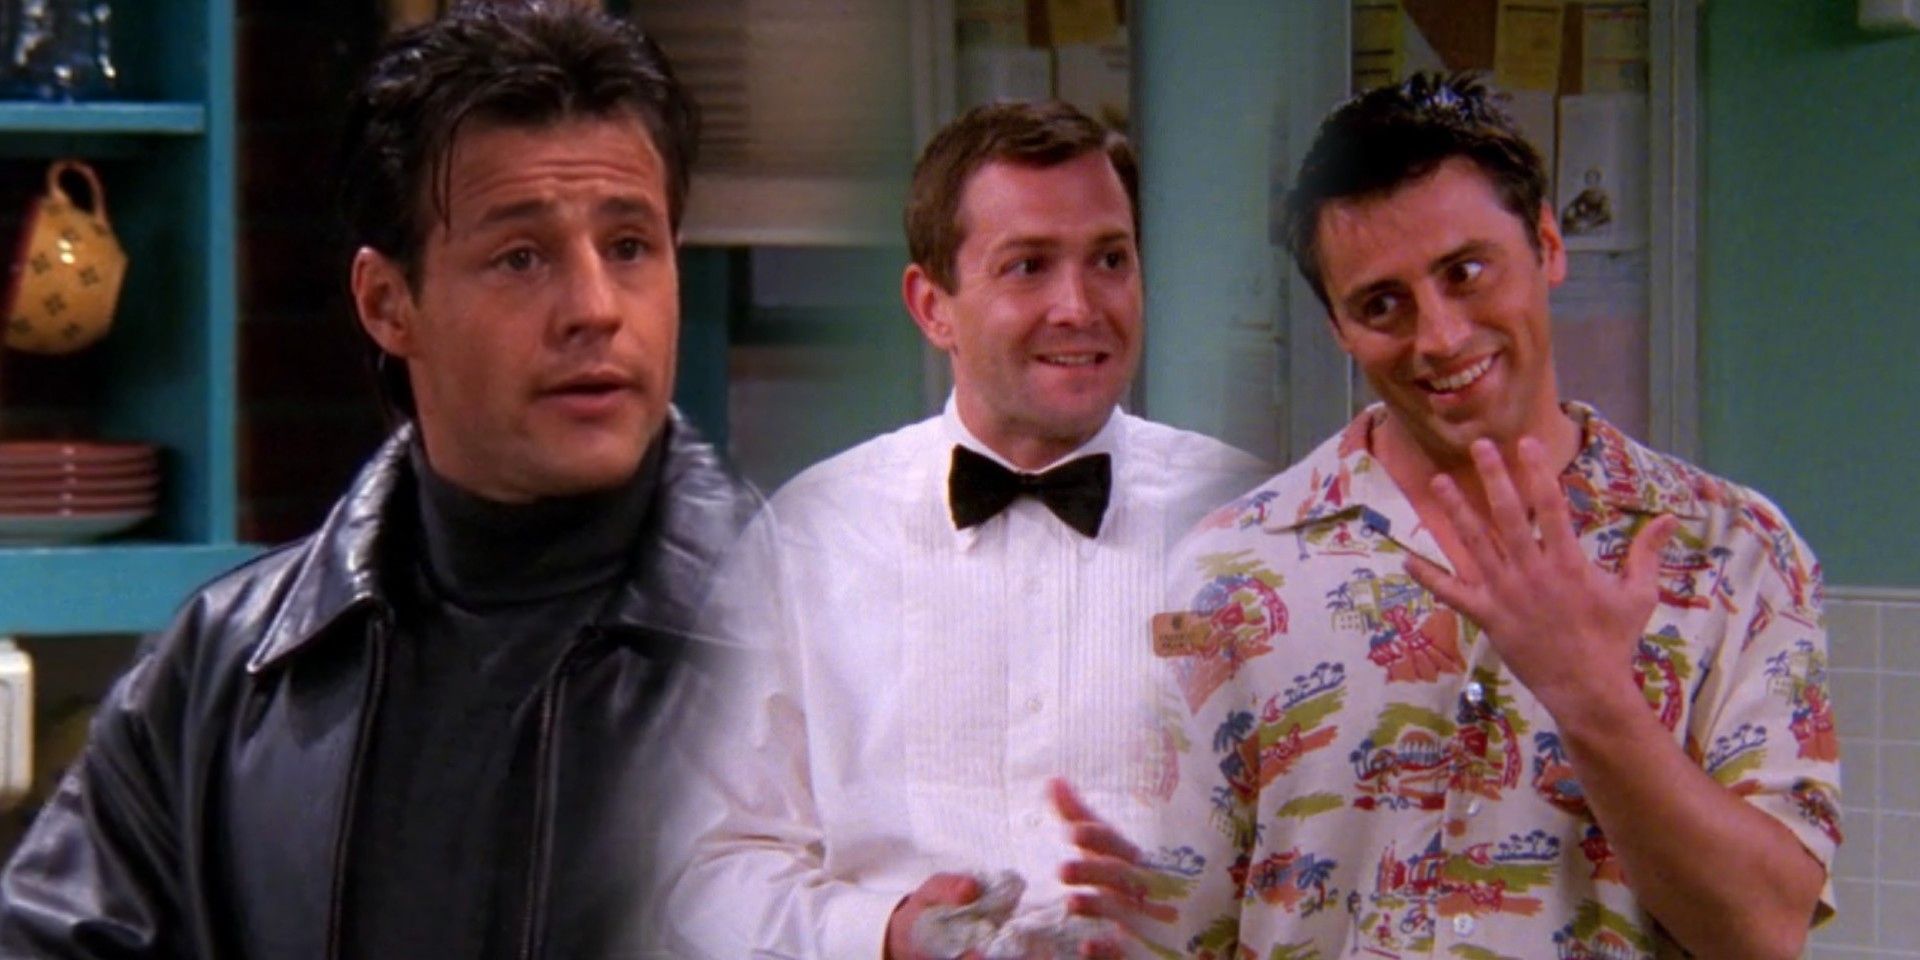 Los amigos hicieron dos veces la misma broma sobre gemelos idénticos de Joey